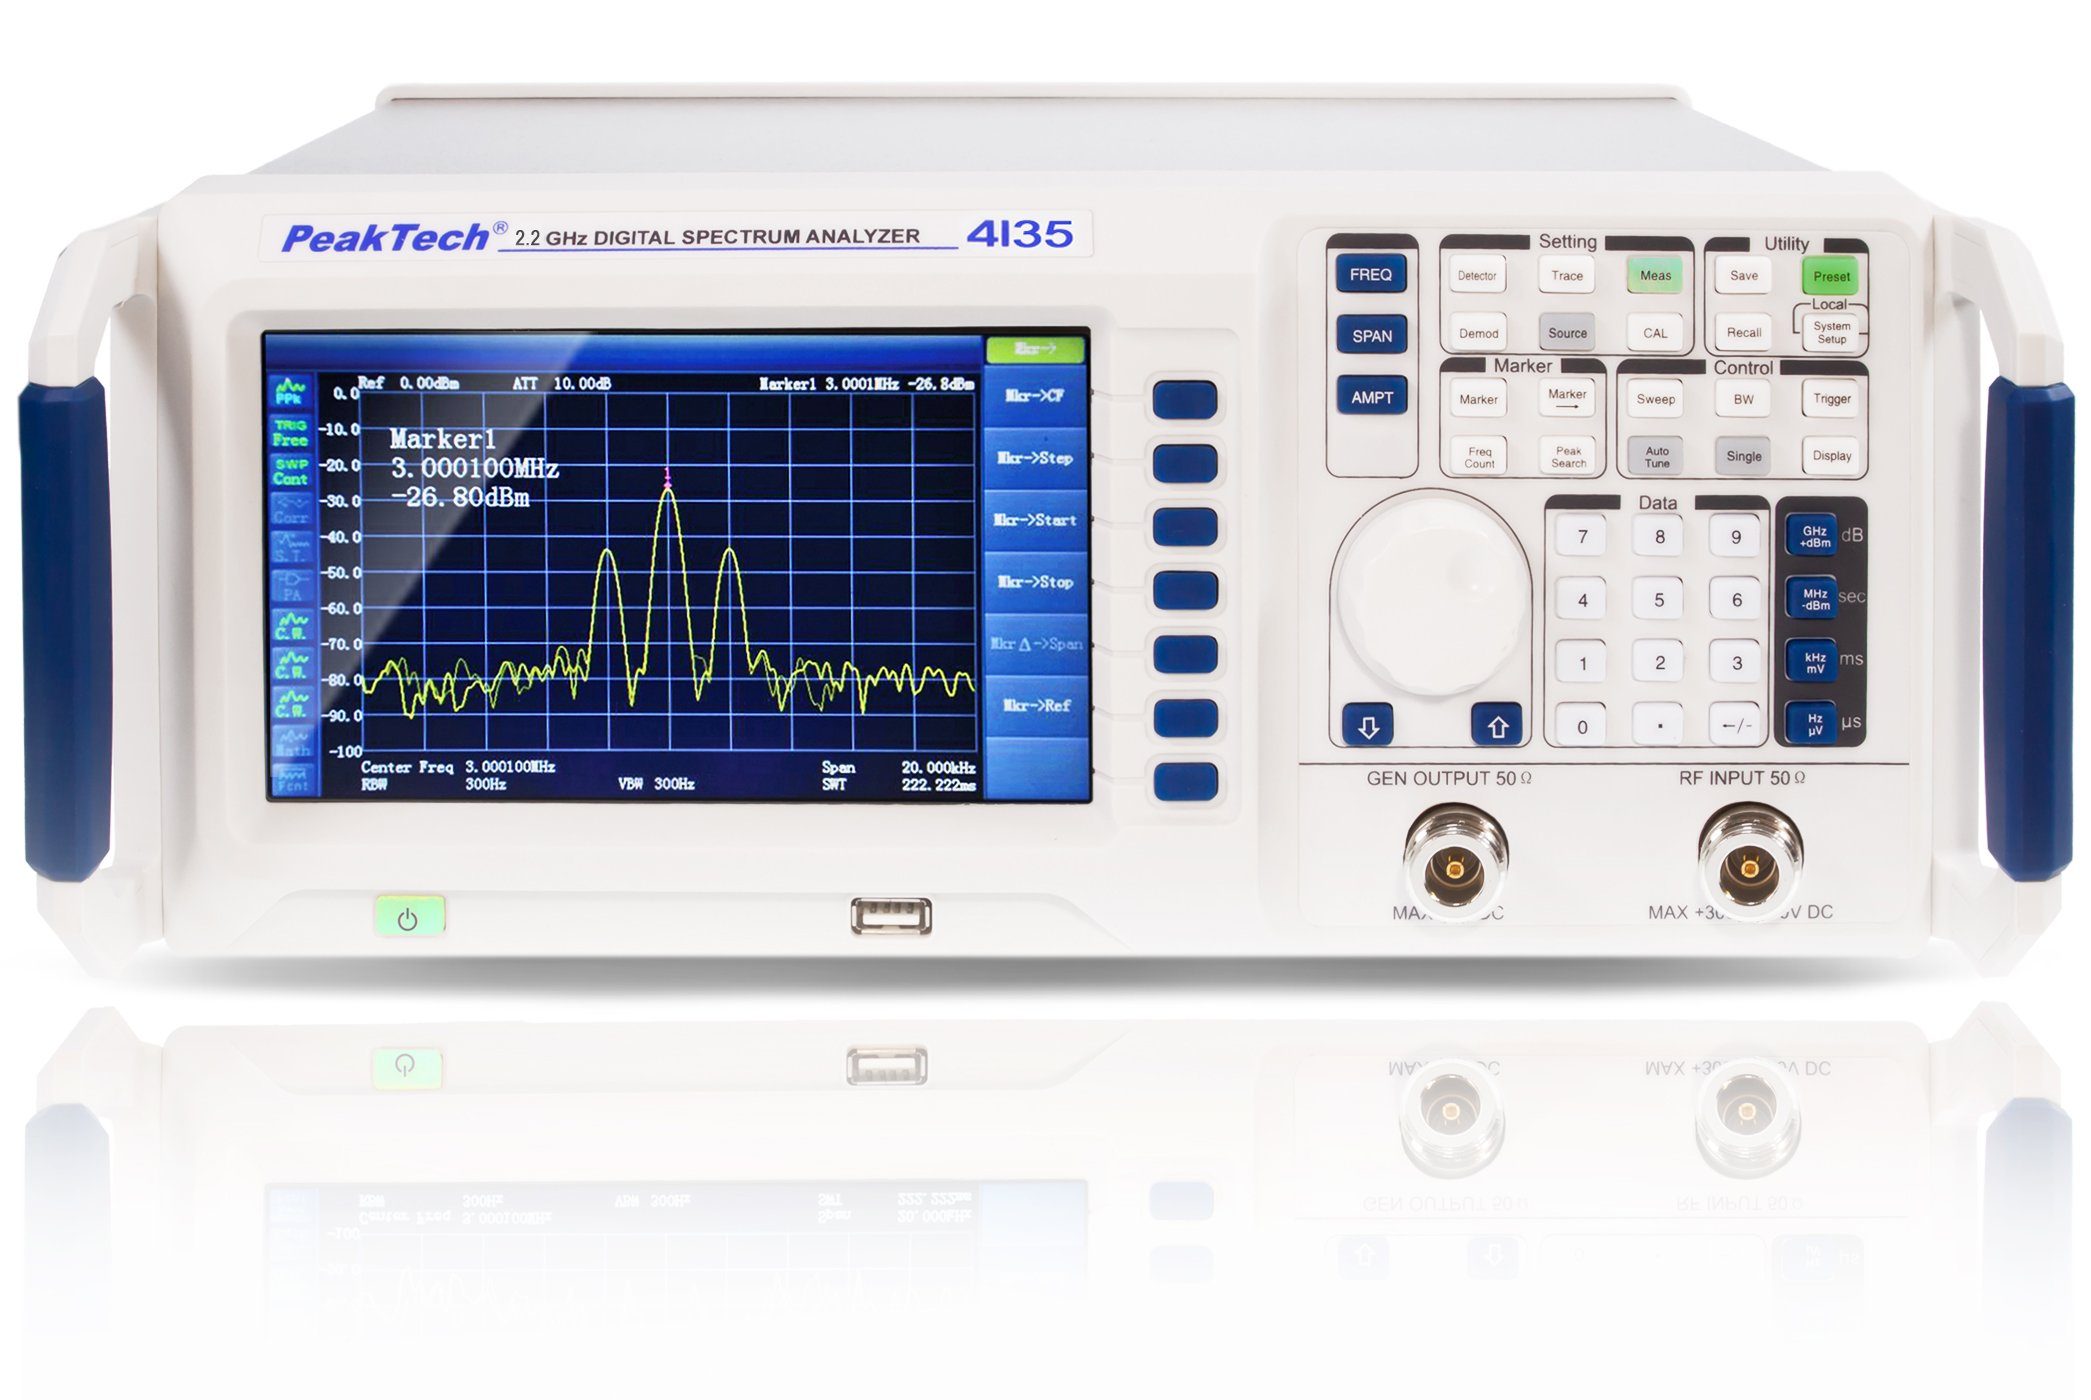 PeakTech Spannungsprüfer PeakTech P Spectrum Analyzer, 2,2 St) GHz (1 4135-1